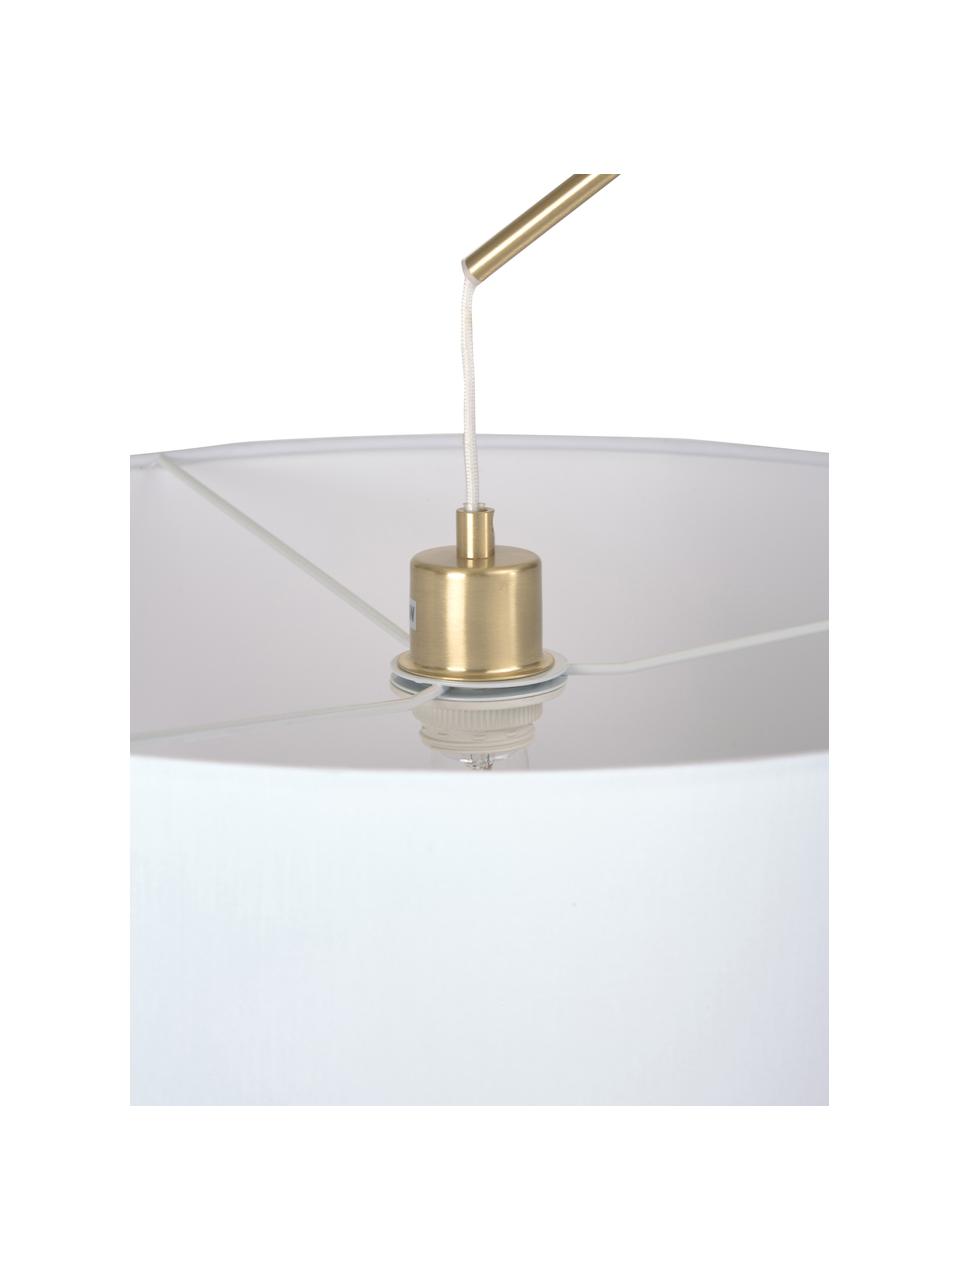 Grote booglamp Niels, Lampvoet: geborsteld metaal, Lampenkap: textiel, Wit, messingkleurig, B 157 x H 218 cm